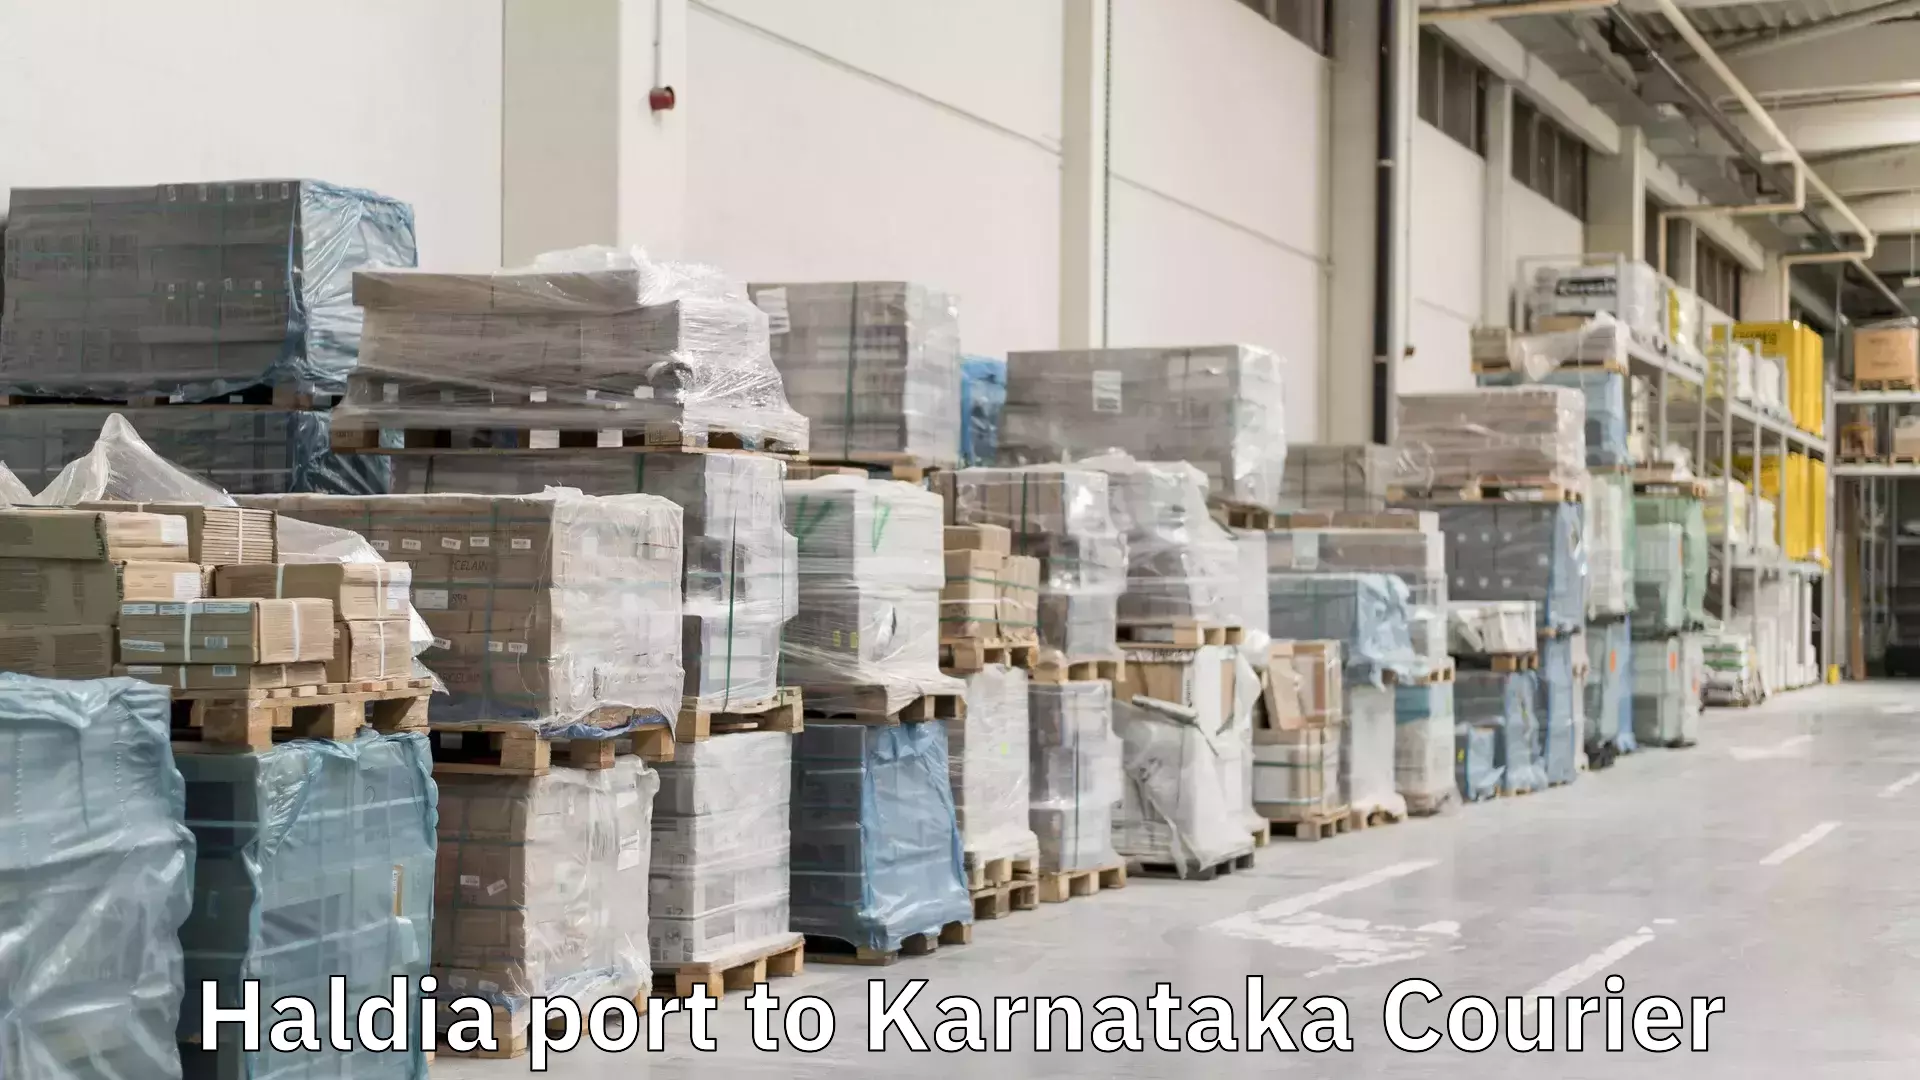 Custom courier packages in Haldia port to Karnataka